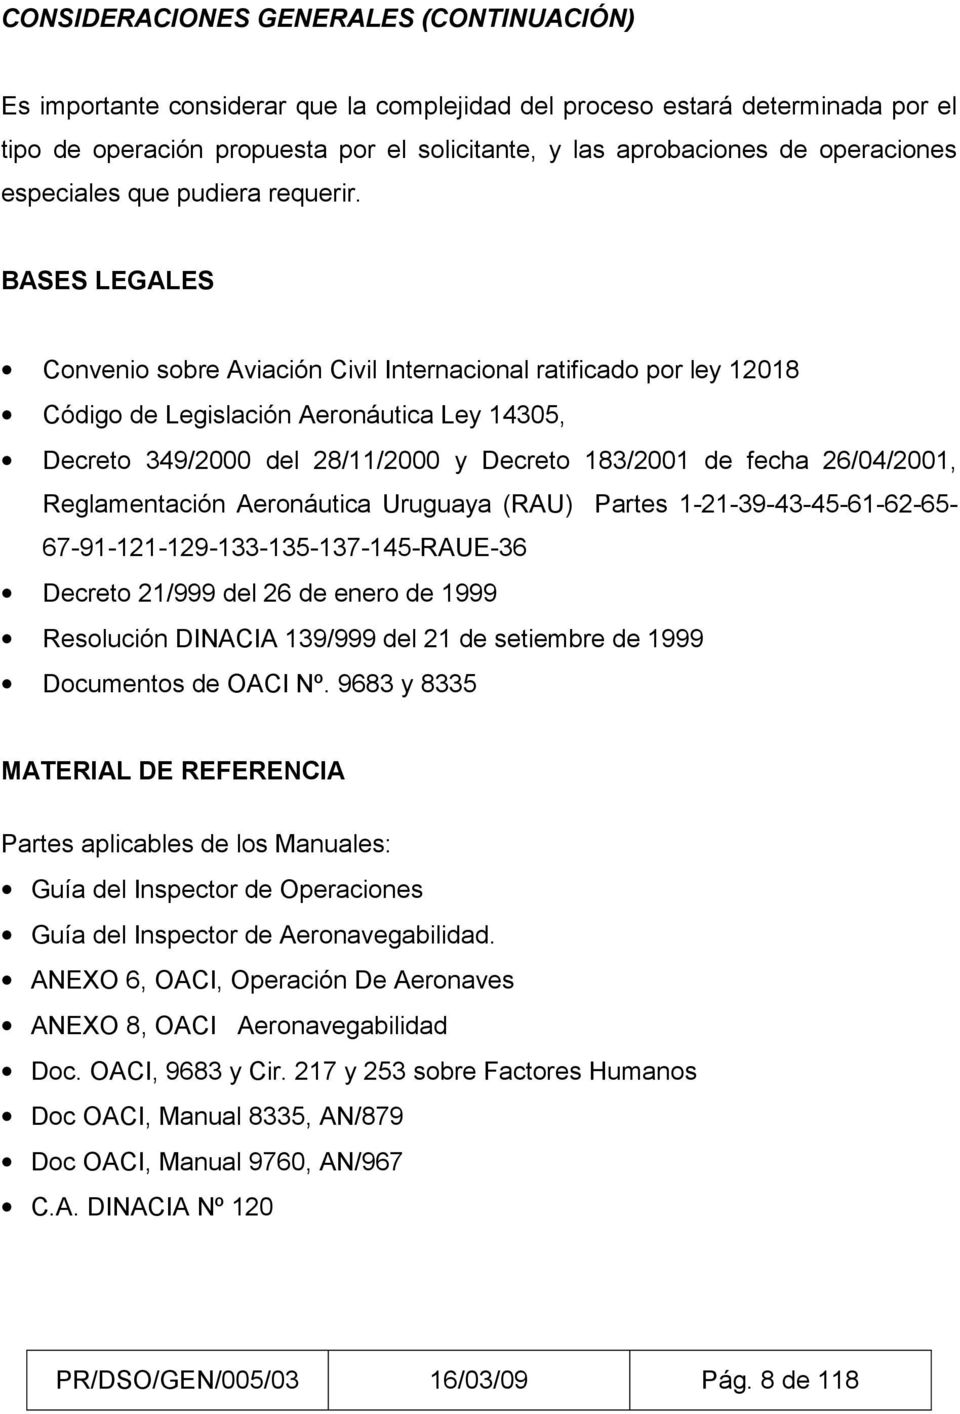 BASES LEGALES Convenio sobre Aviación Civil Internacional ratificado por ley 12018 Código de Legislación Aeronáutica Ley 14305, Decreto 349/2000 del 28/11/2000 y Decreto 183/2001 de fecha 26/04/2001,